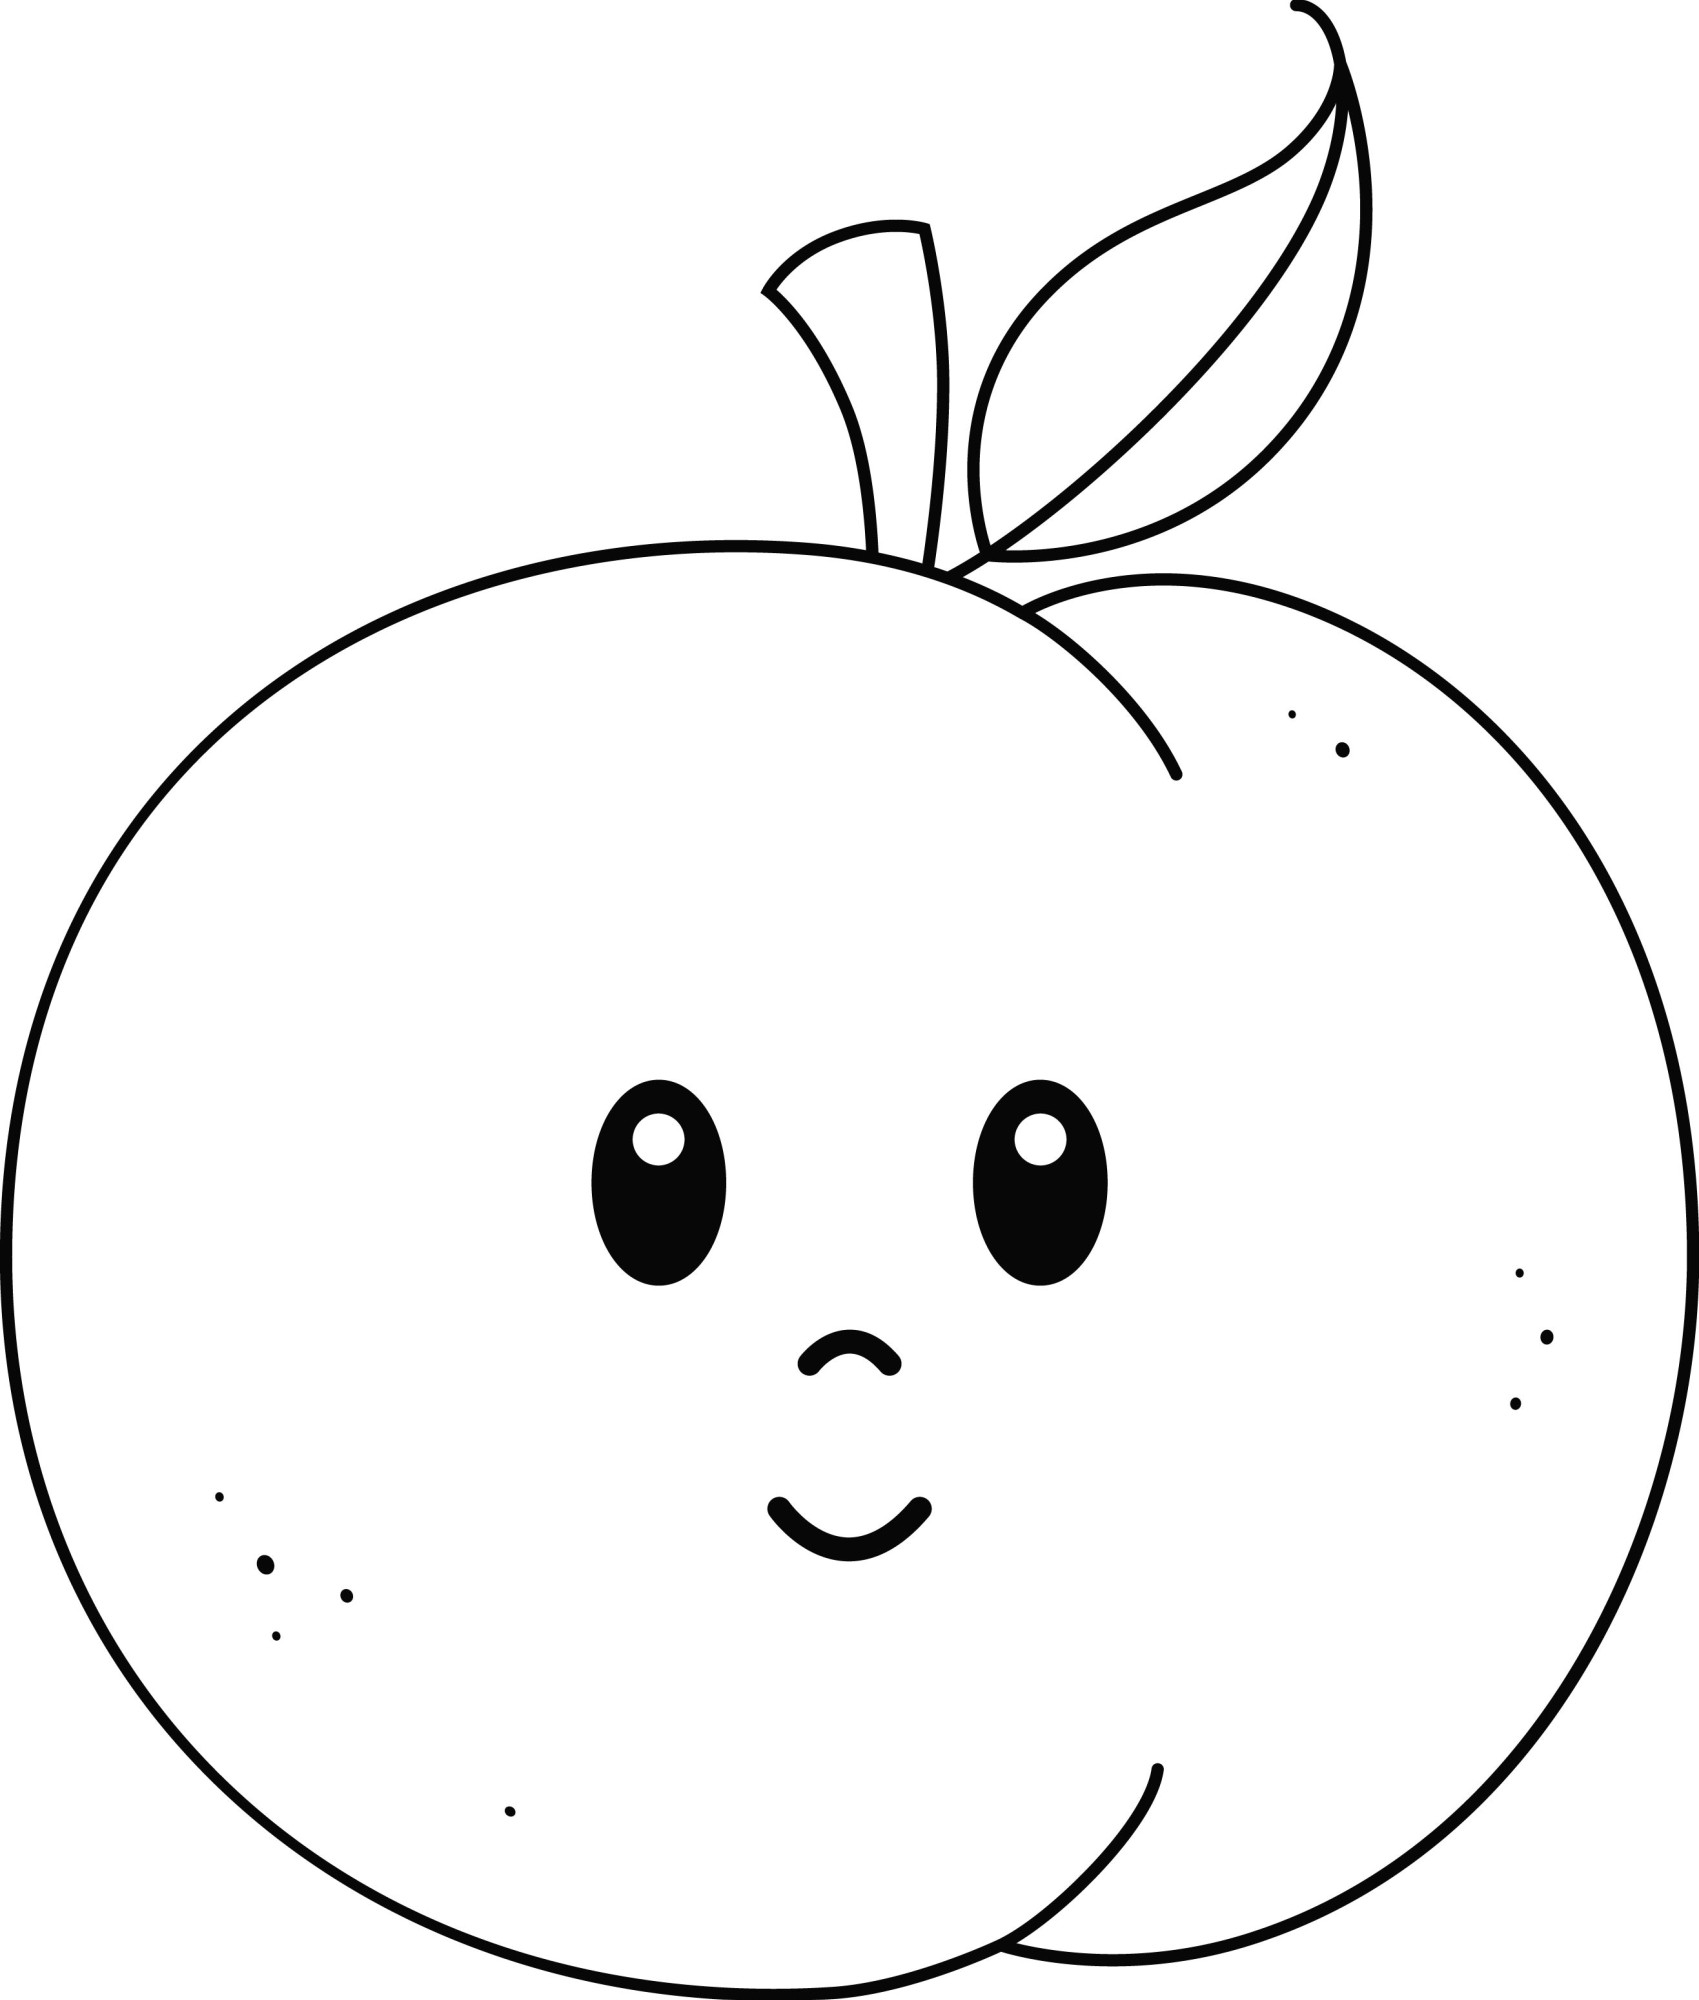 Раскраска для детей: сказочный персик с лицом